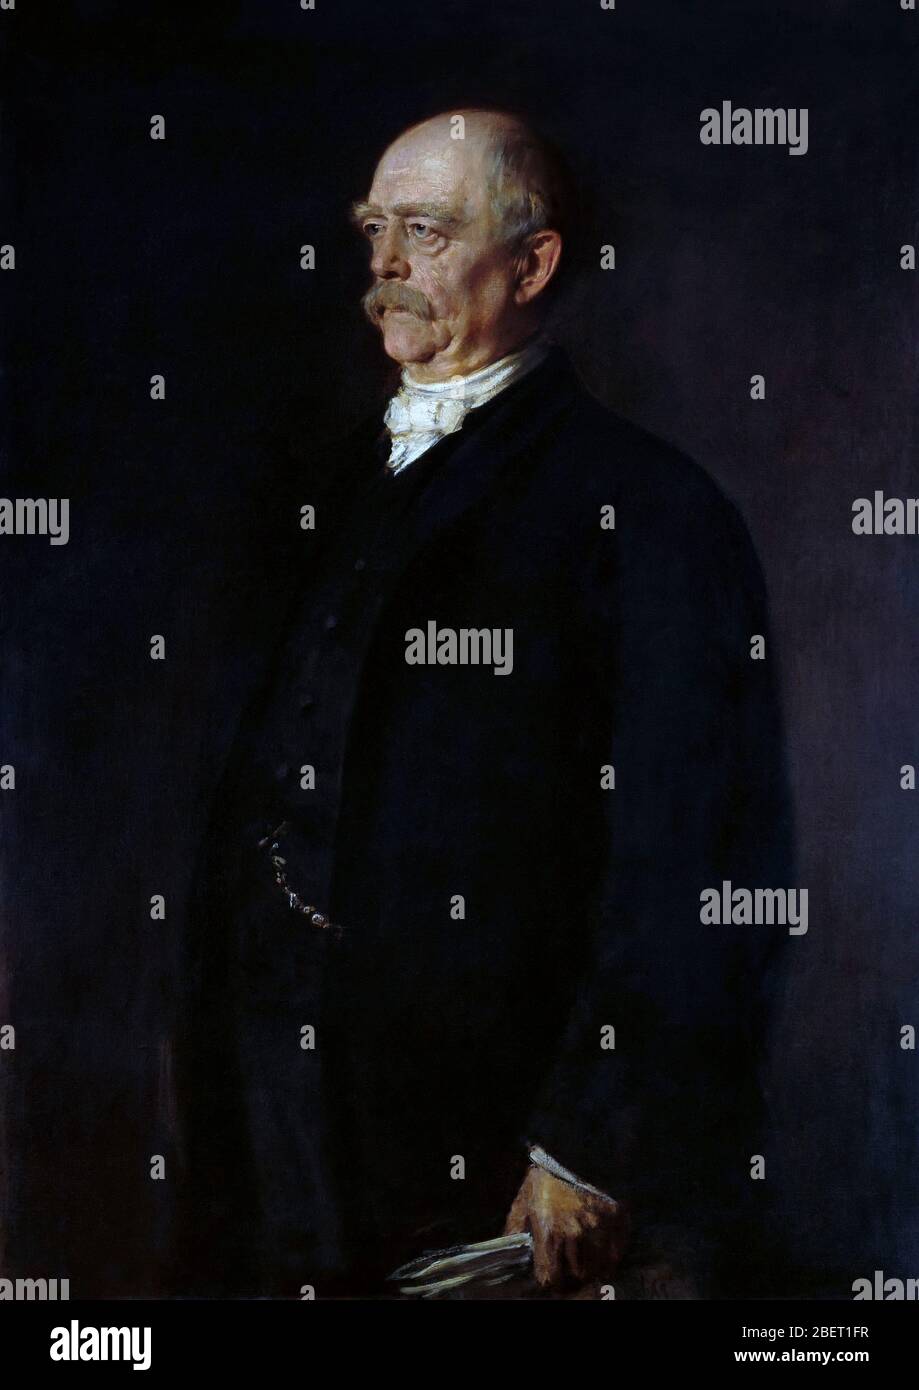 A portrait of Otto von Bismarck. Stock Photo